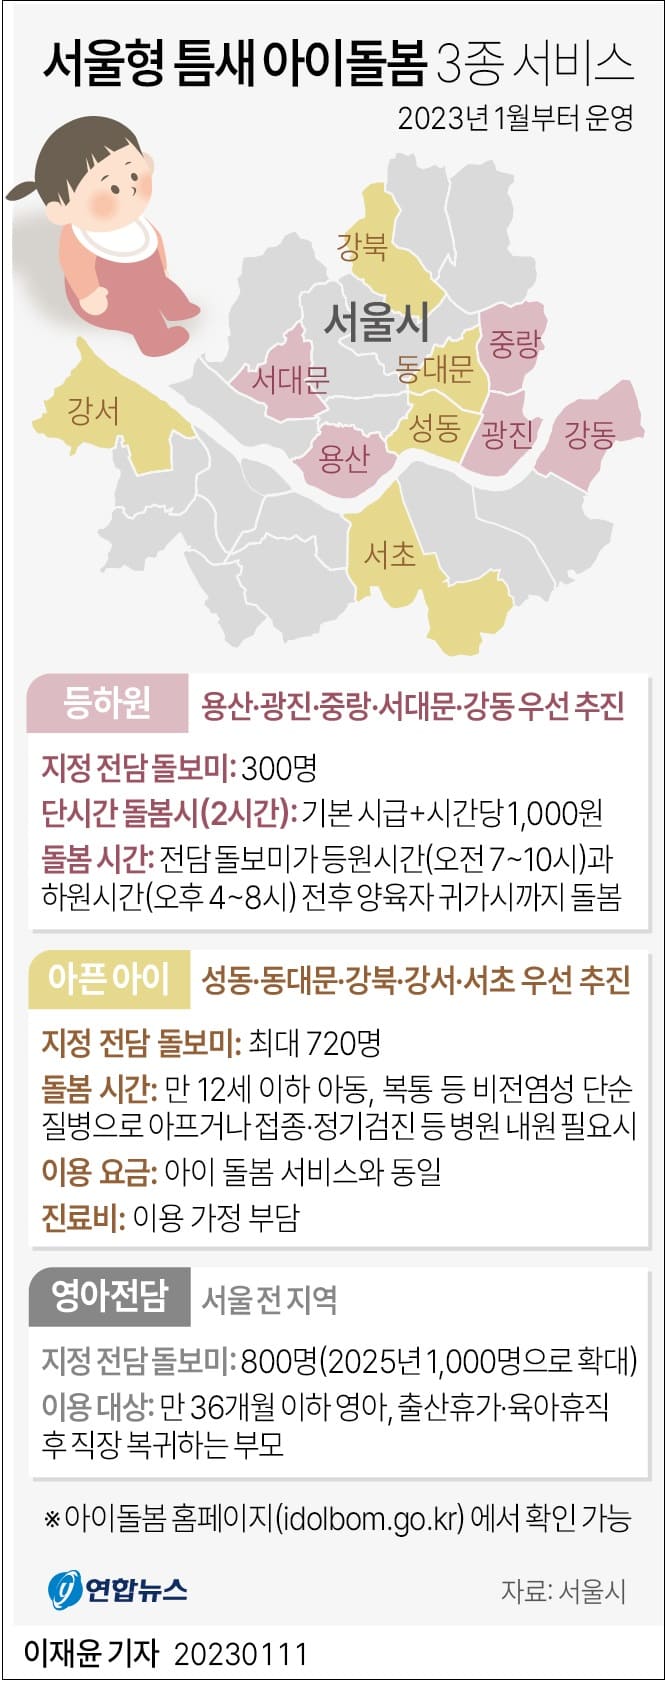 '서울형 틈새 아이돌봄 서비스' 3종 이달부터 본격적 확대·운영 ㅣ 특례보금자리론 30일부터 신청받는다